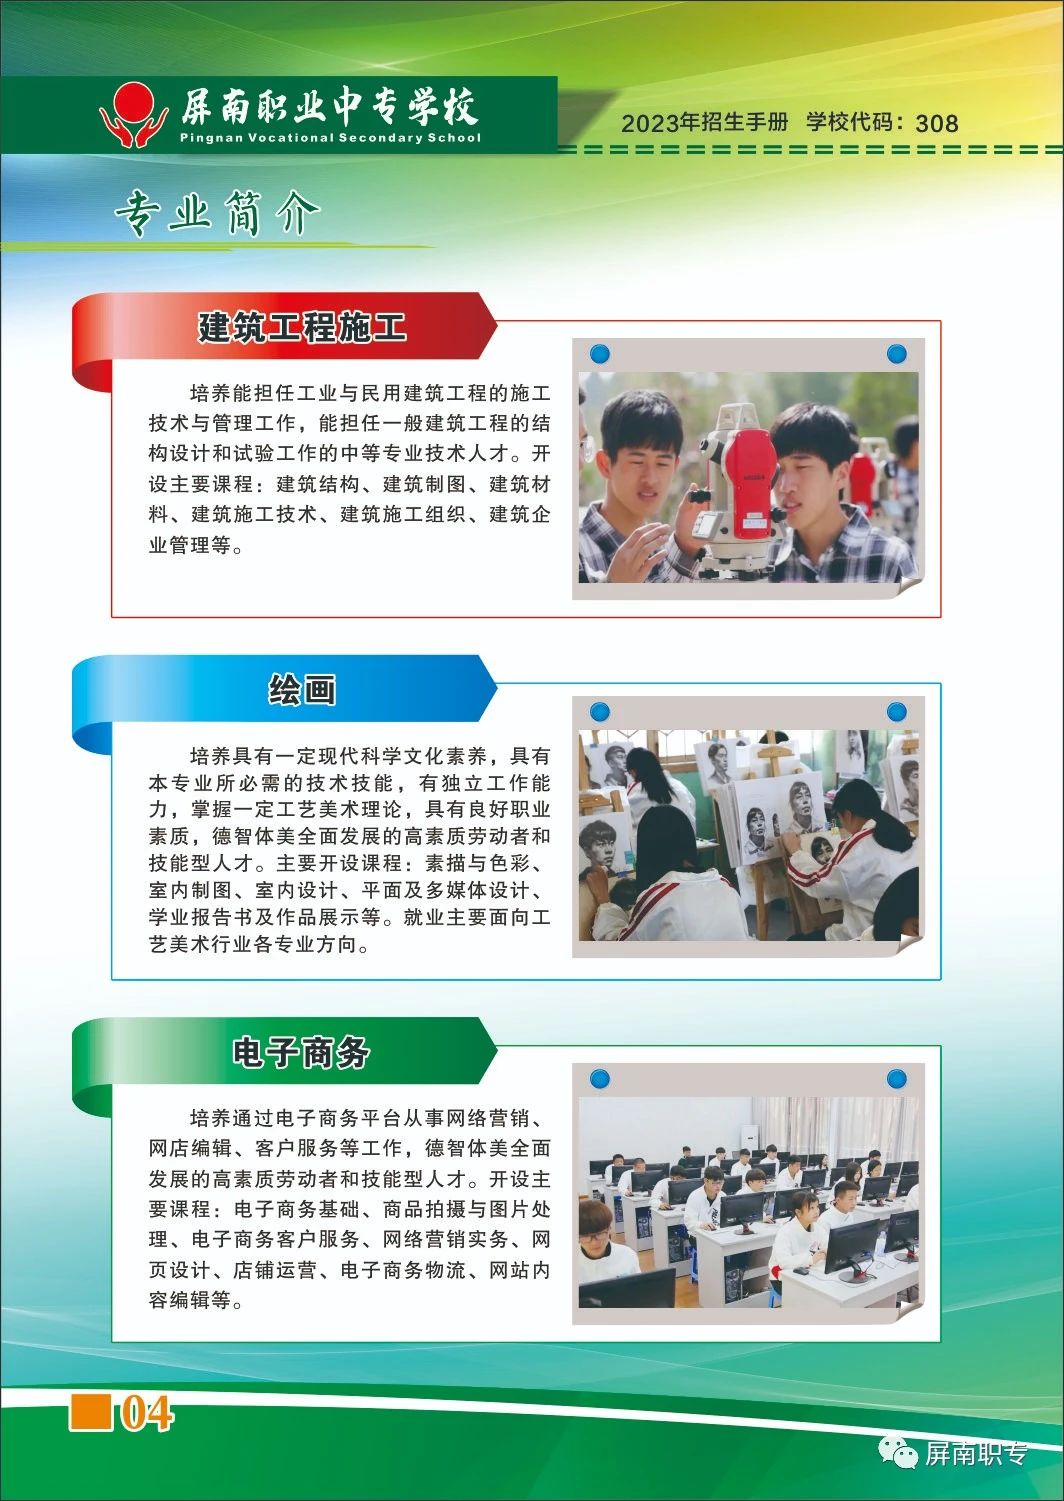 2023年屏南职业中专学校招生简章